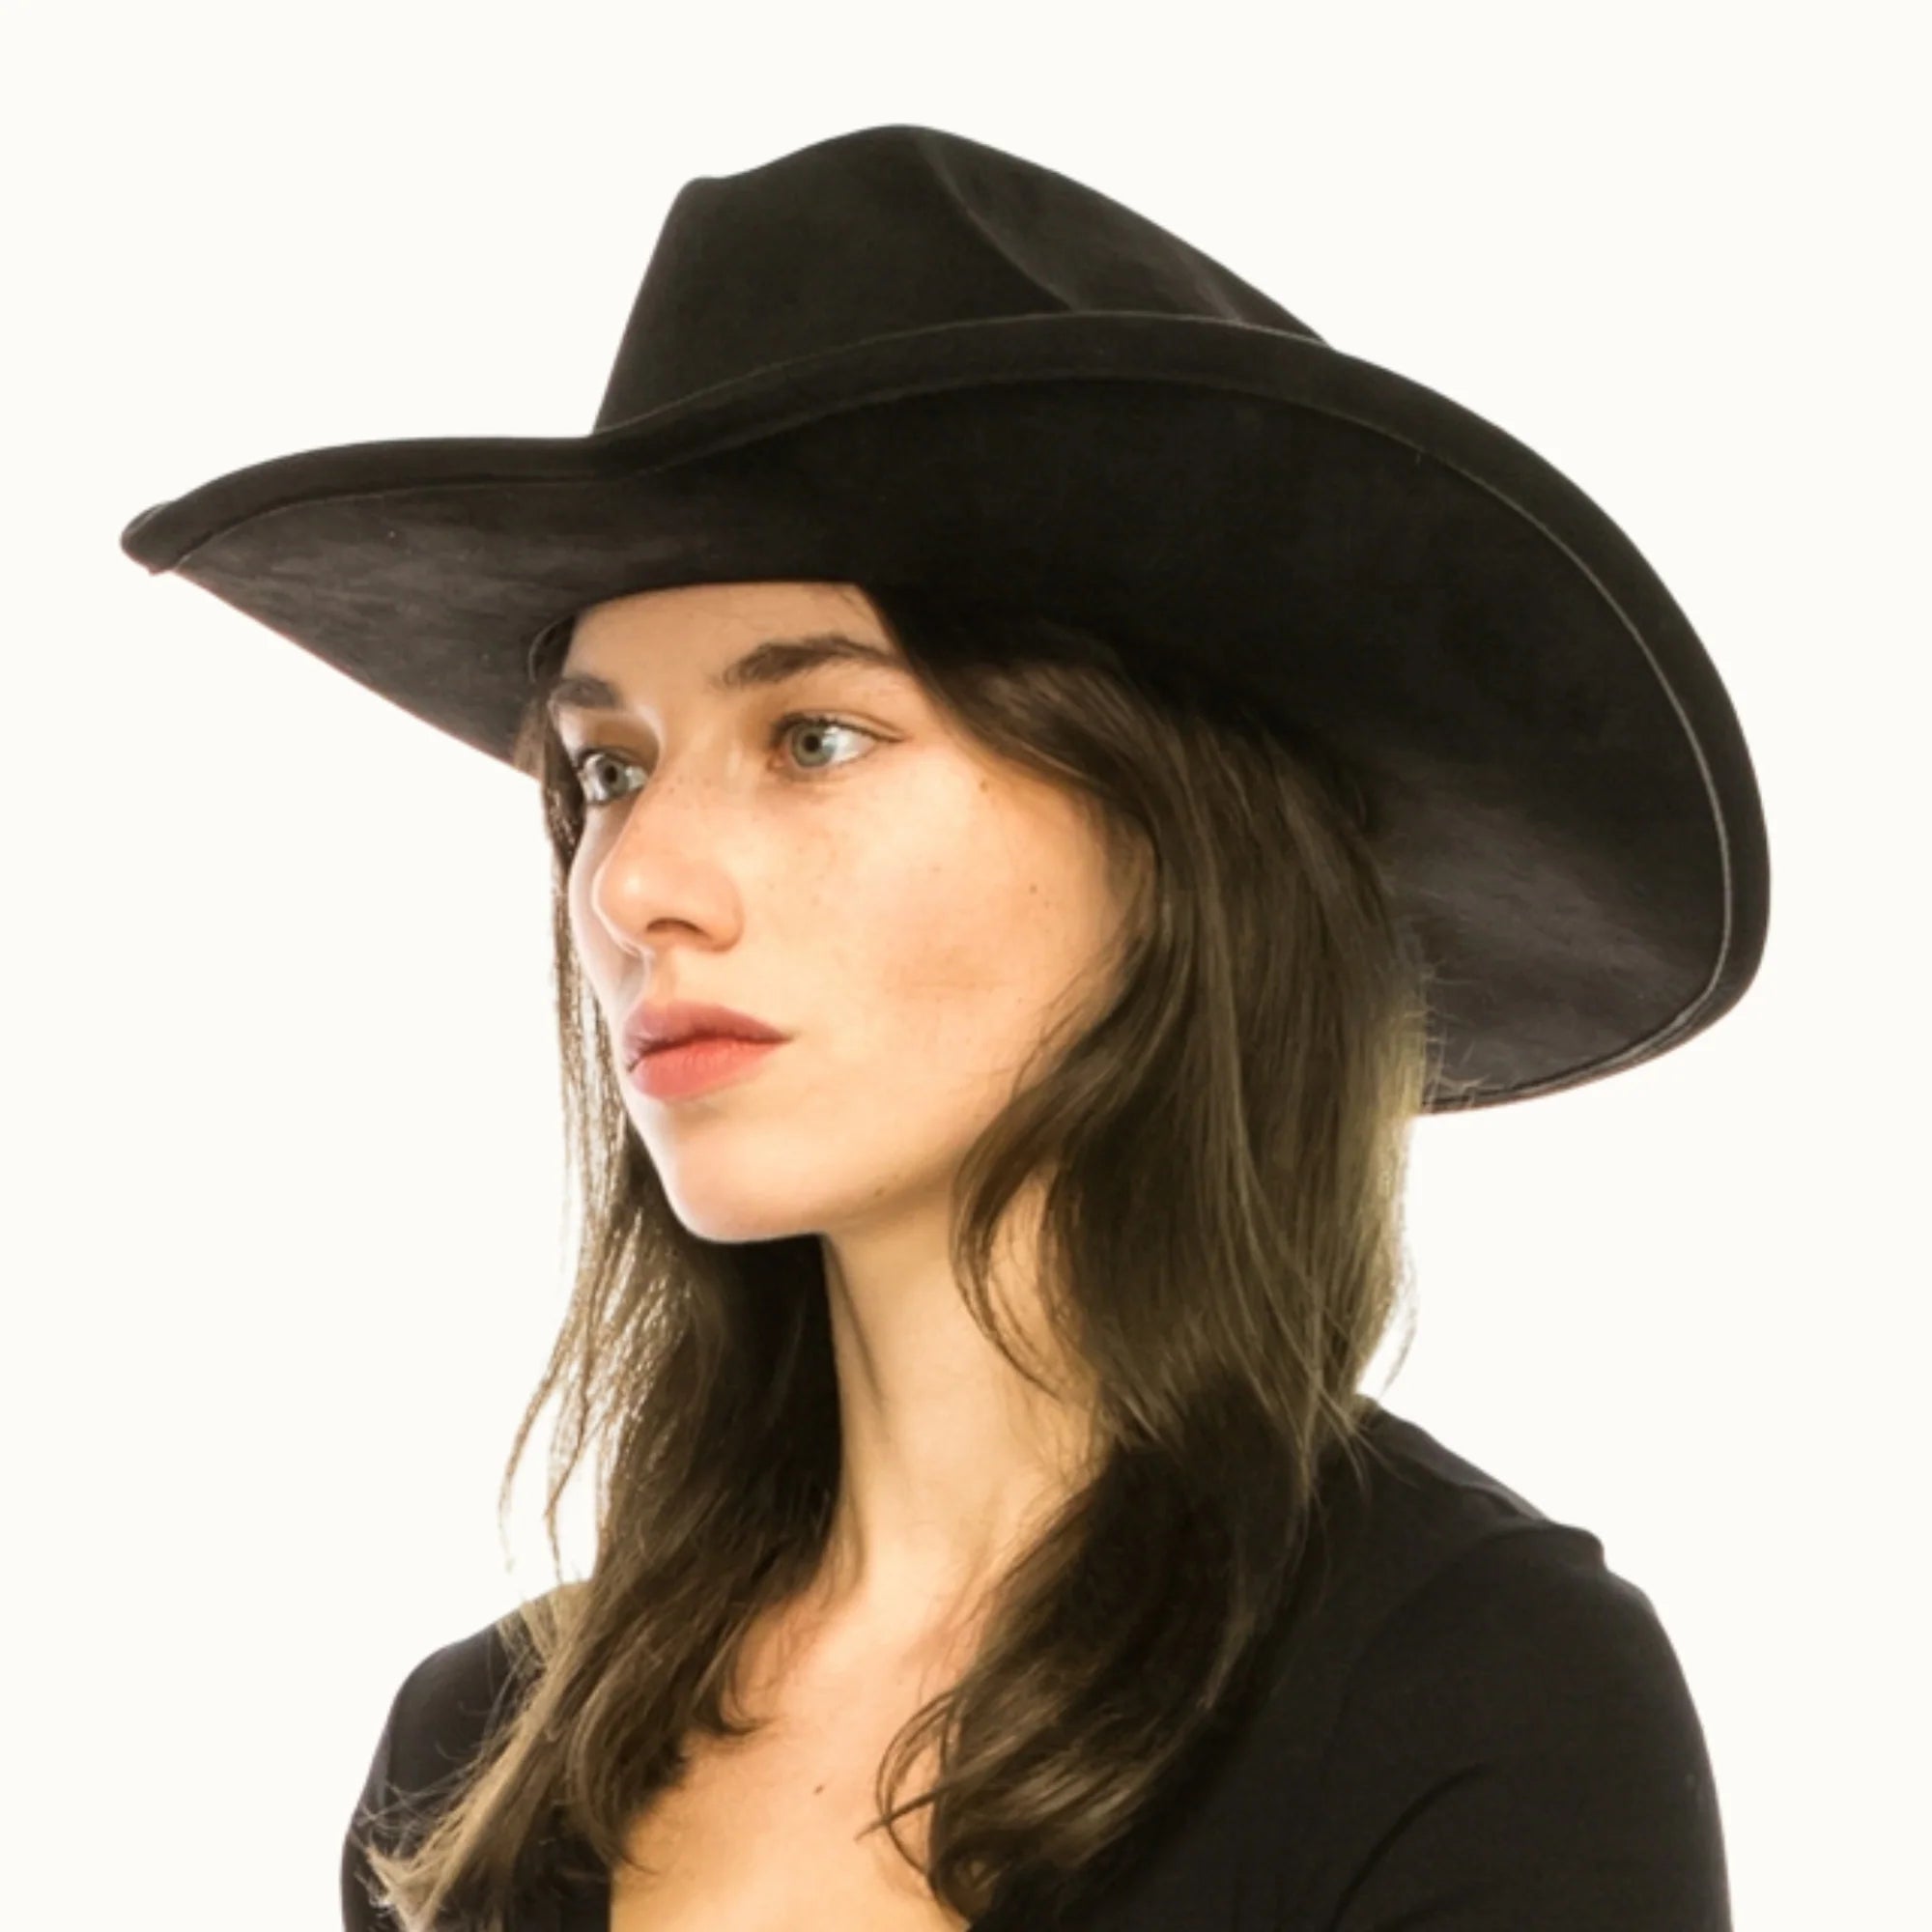 Suede Cattleman Cowboy Hat